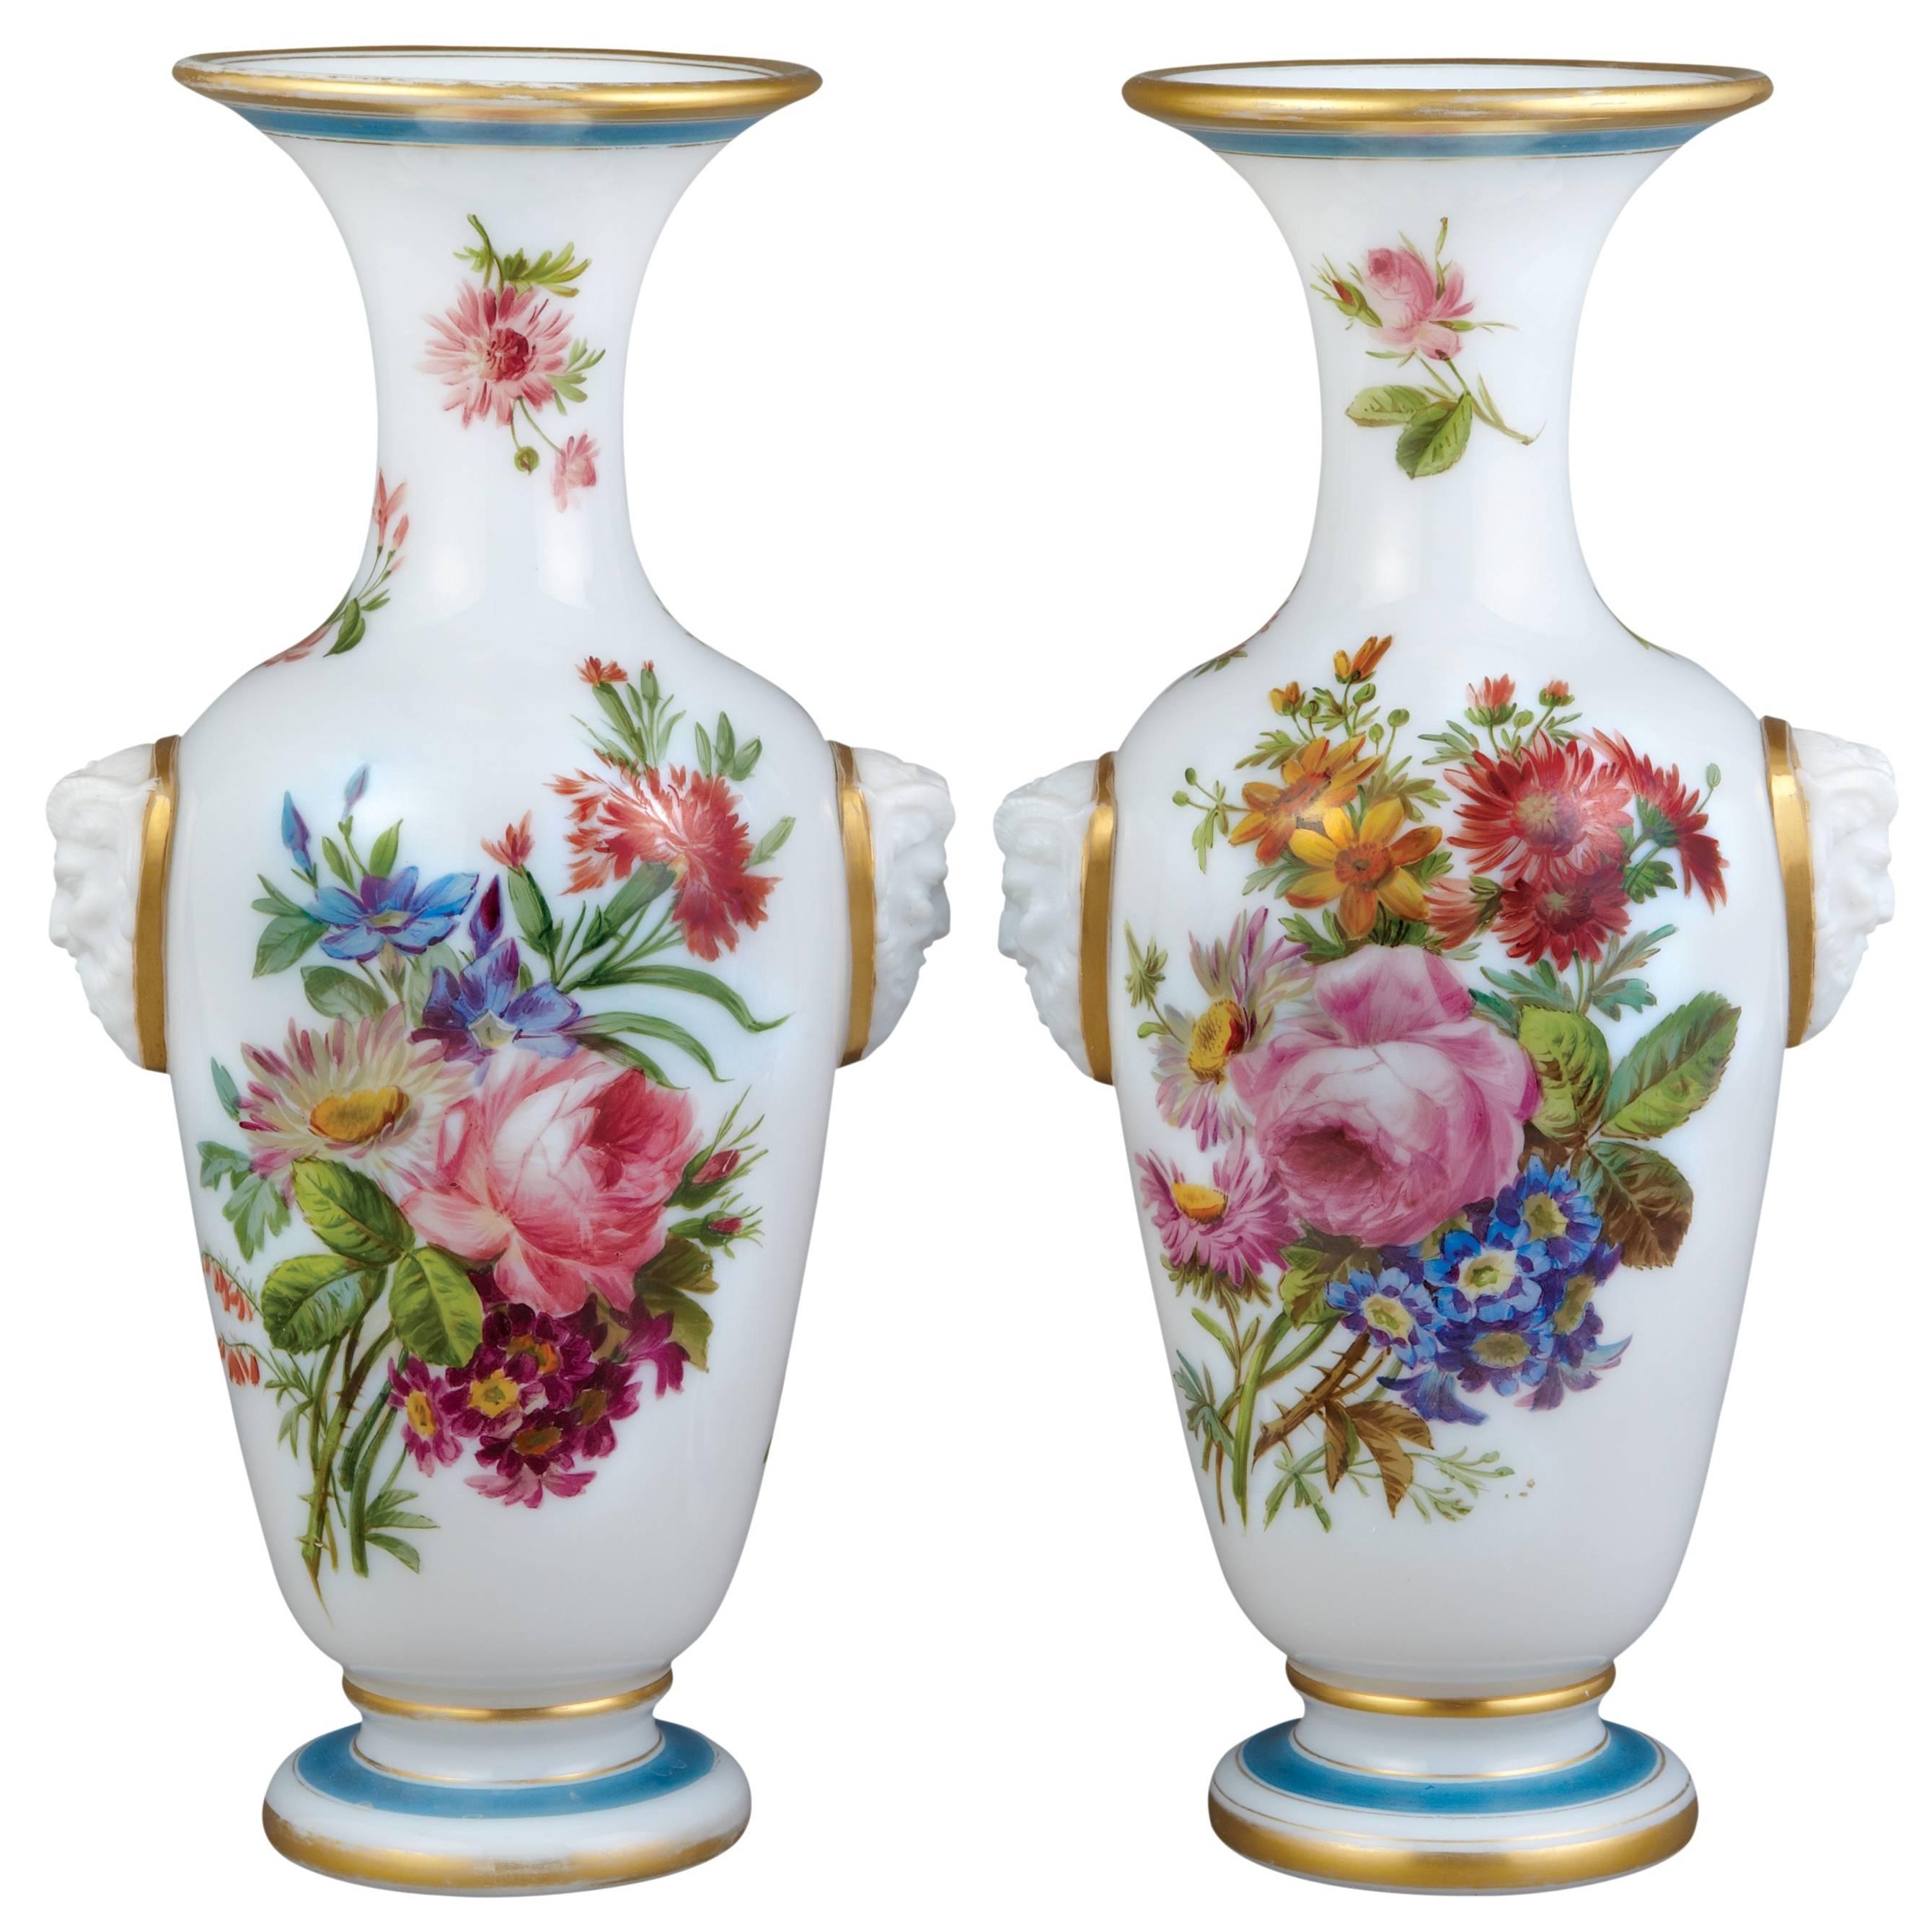 Paire de vases en verre opalin fleuri de Baccarat
Français, vers 1850
Hauteur 35cm, largeur 18cm, profondeur 14cm

Ces vases en verre opalin de Baccarat sont de forme traditionnelle, chacun avec un corps bulbeux à fond blanc, un pied étalé, un col